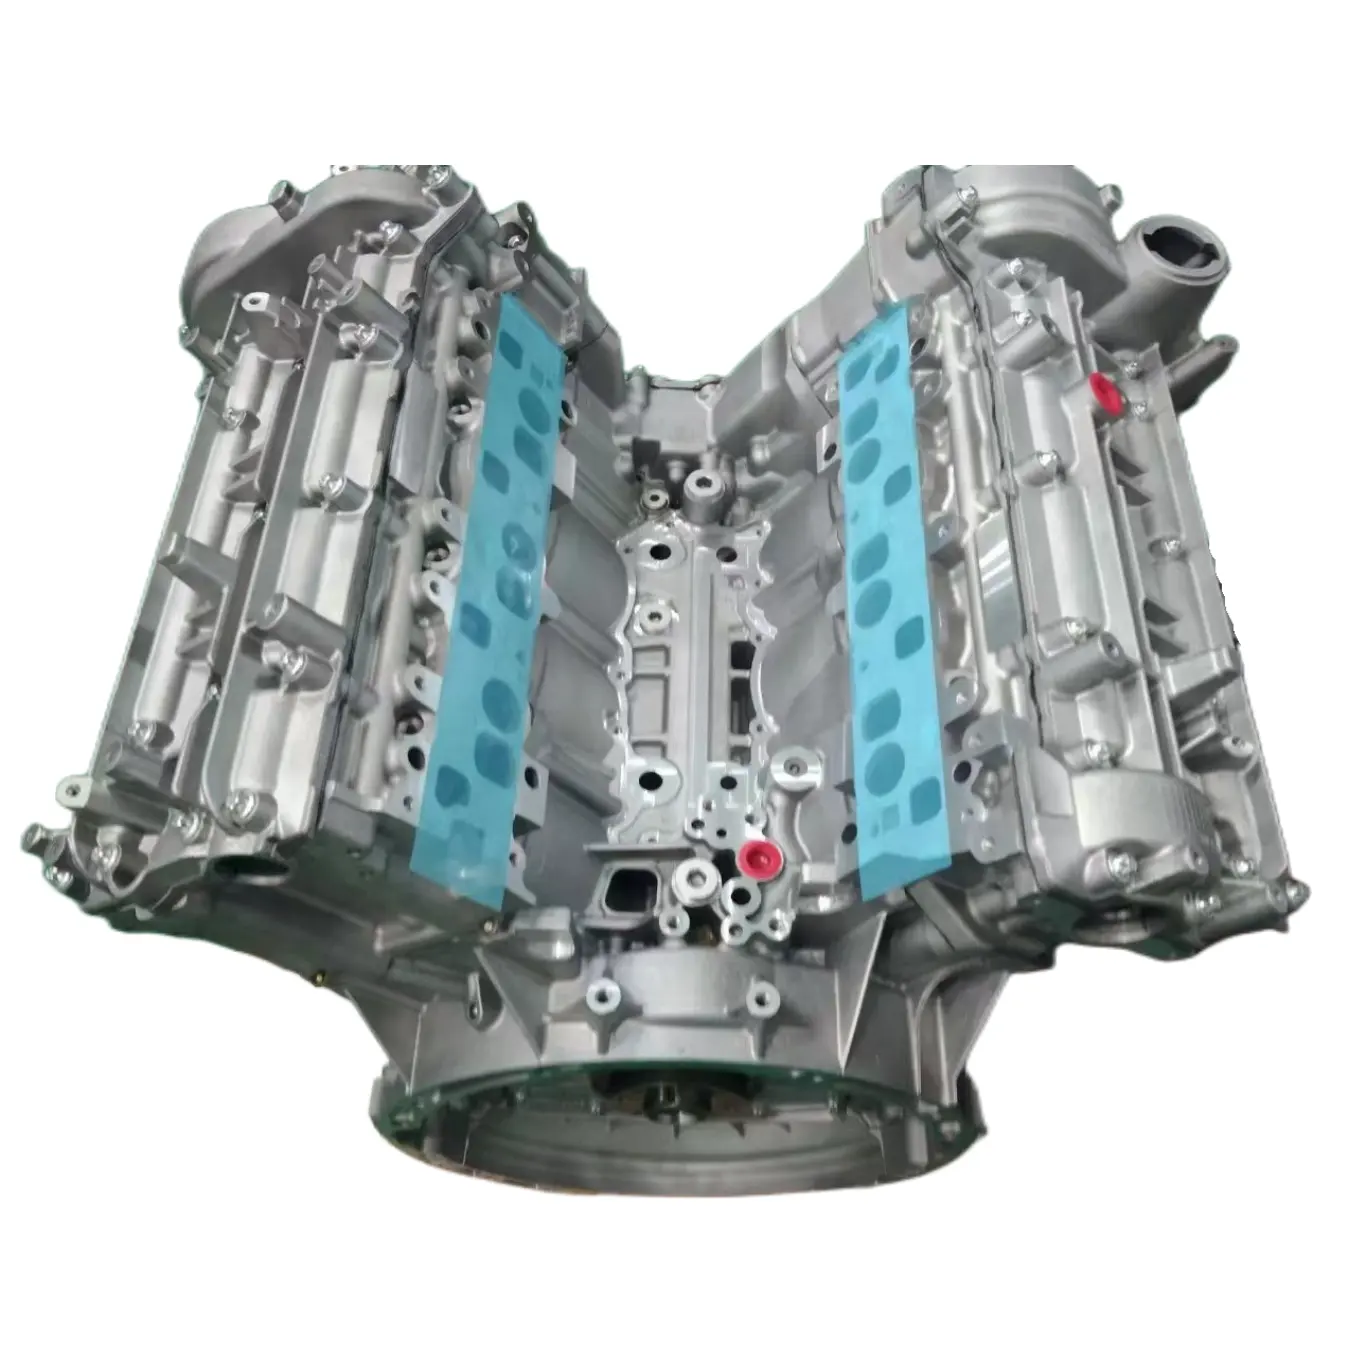 मर्सिडीज-बेंज 272952 के लिए ऑटोमोबाइल इंजन इंजन विधानसभा M272 E30 V6 W212-E300 एल 3.0 Remanufactured भागों